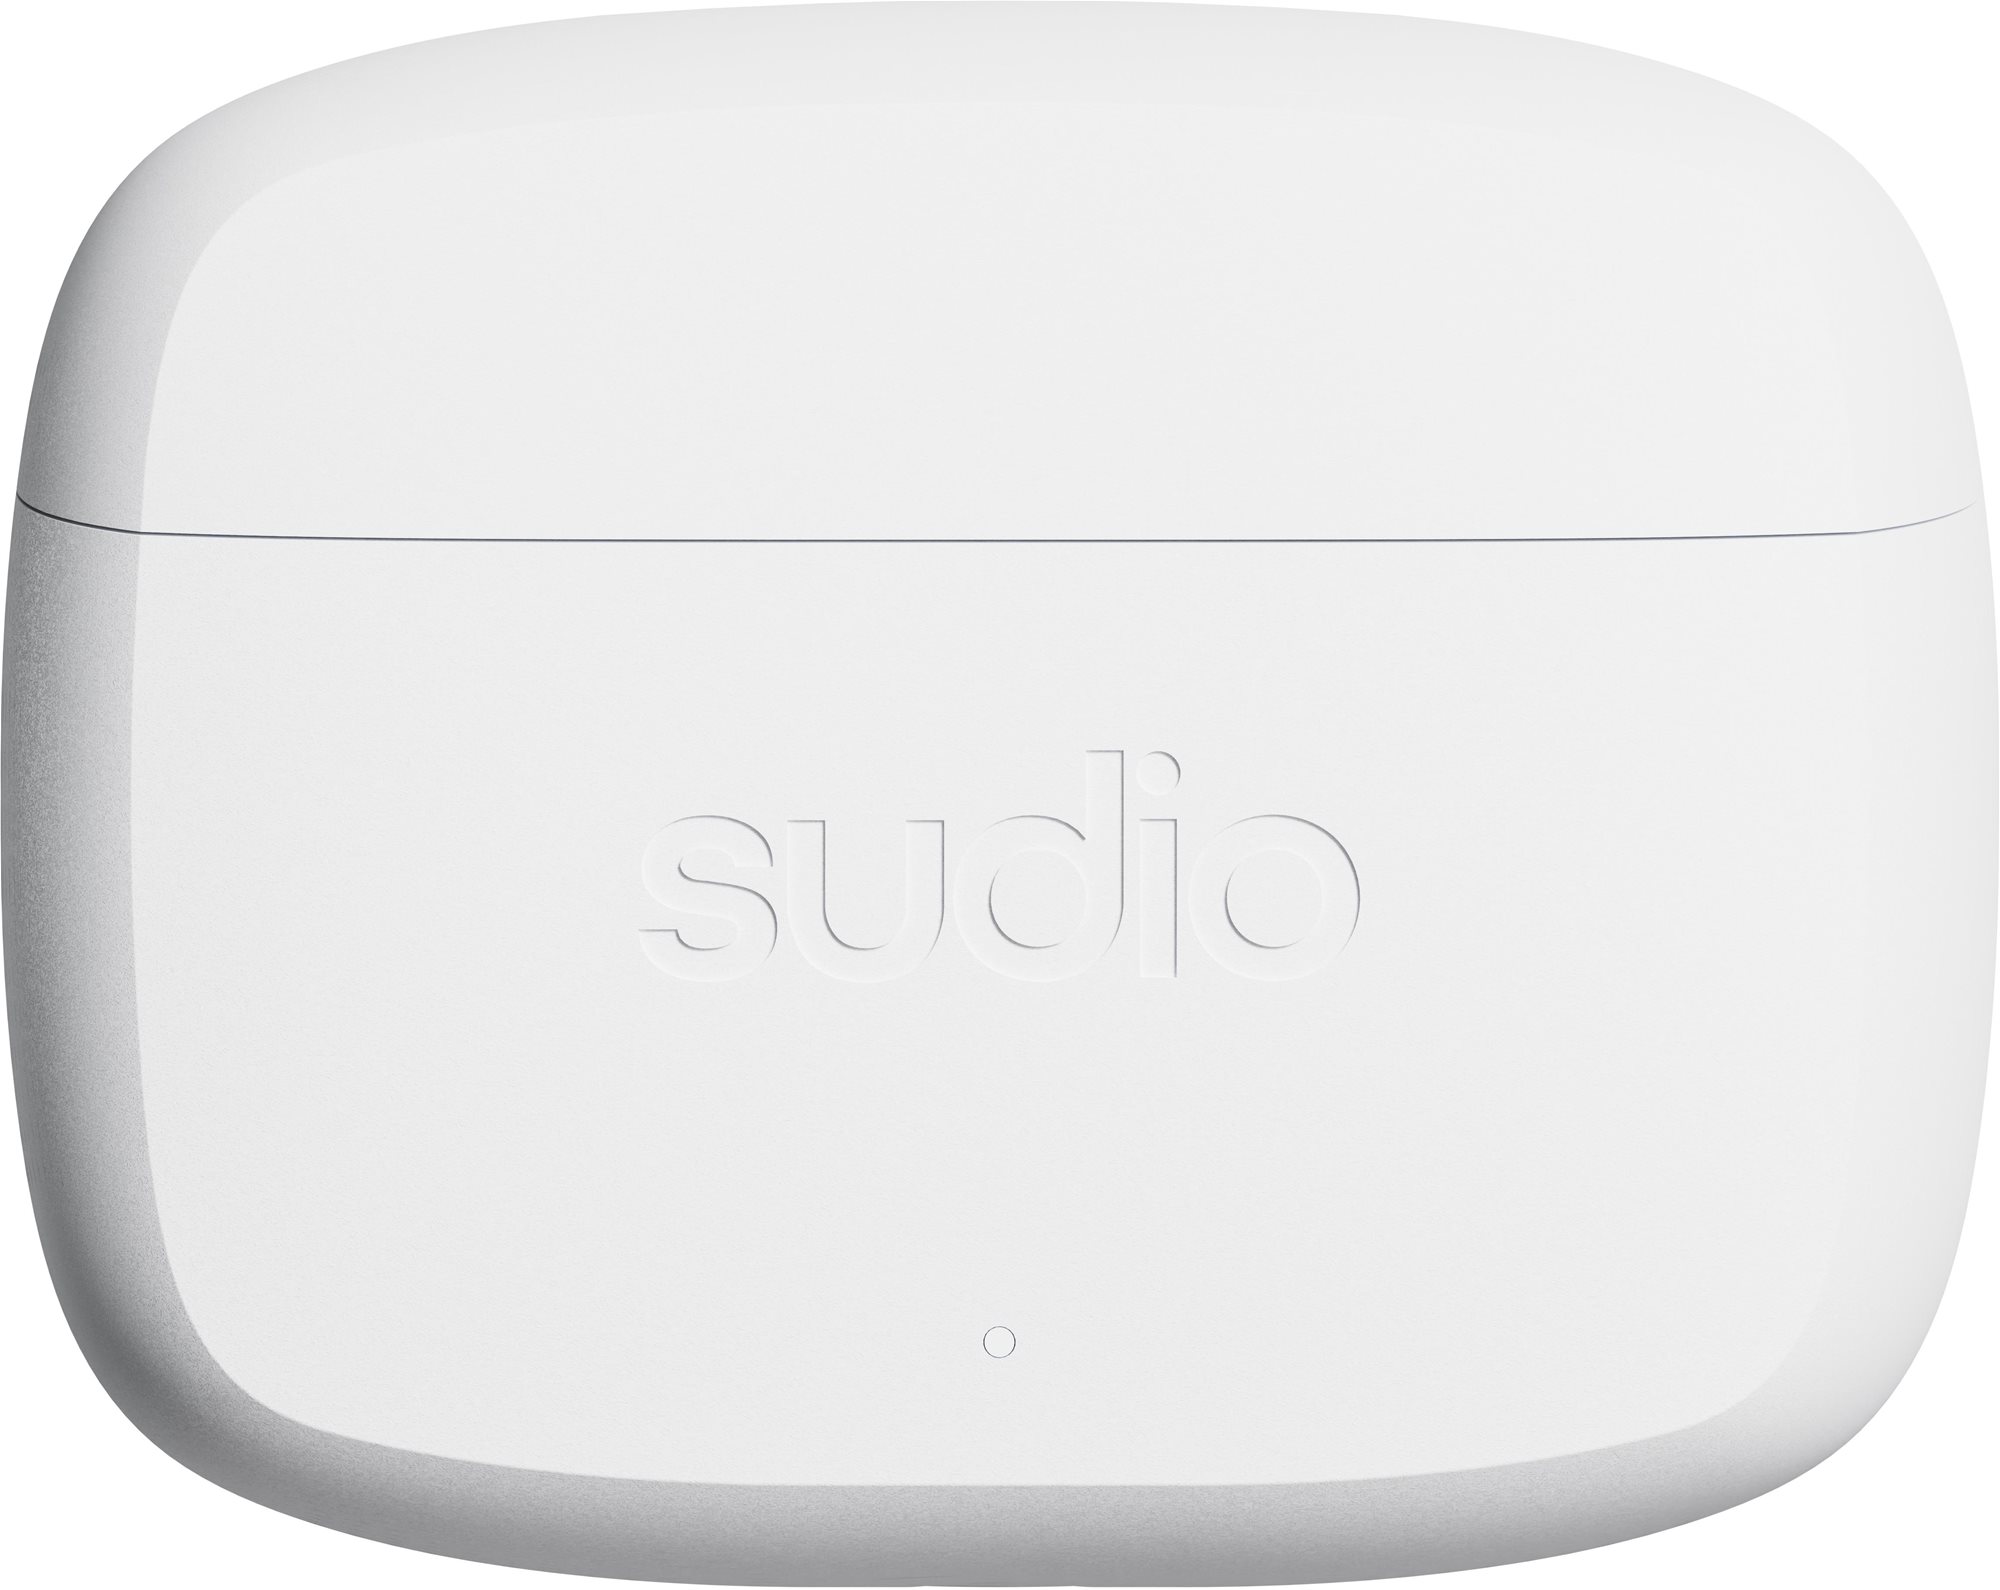 Vezeték nélküli fül-/fejhallgató Sudio N2 Pro White